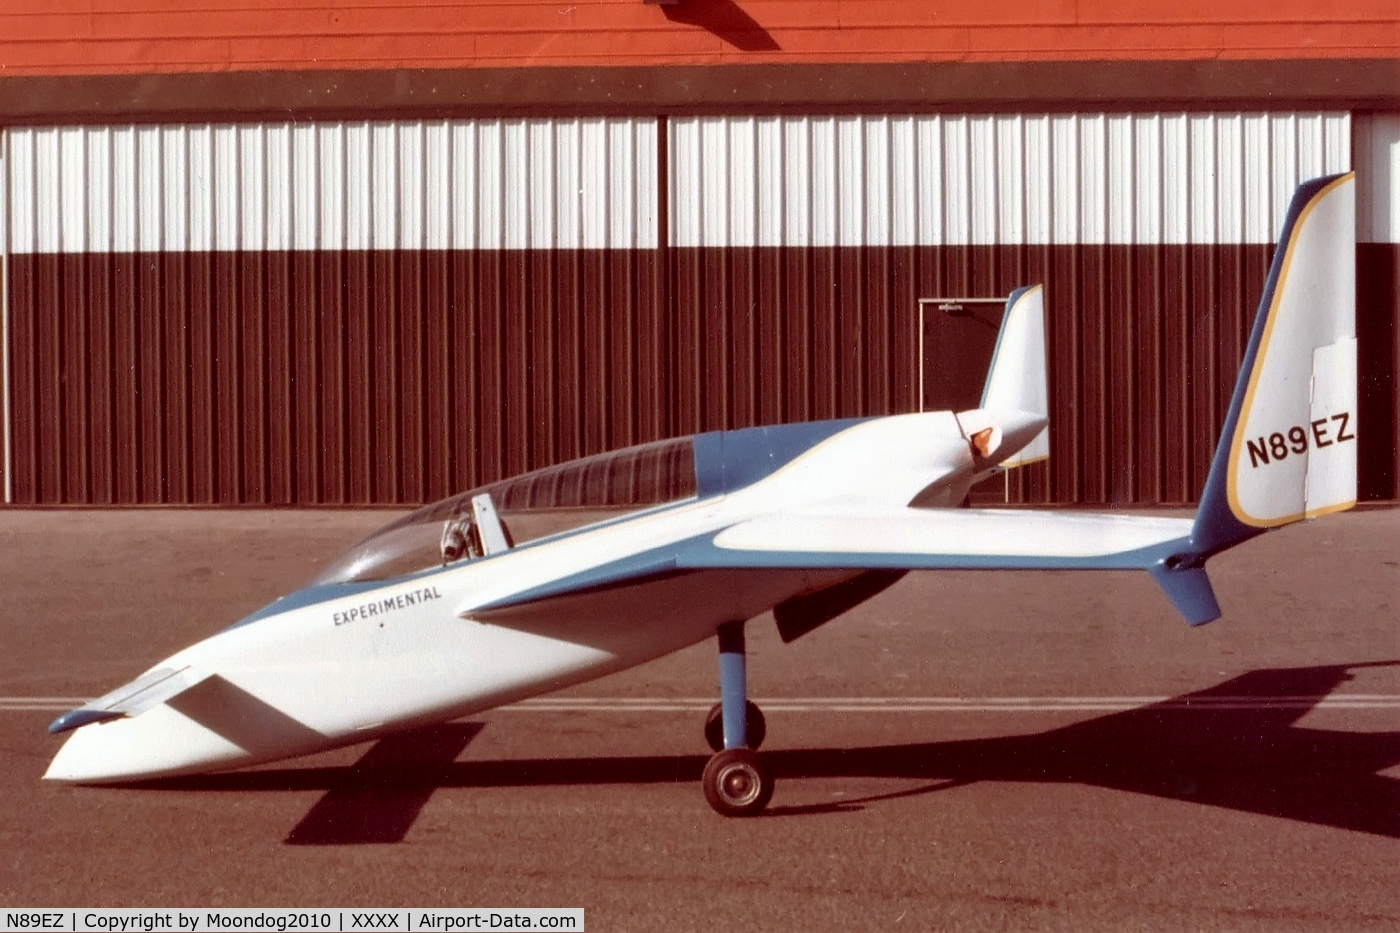 N89EZ, 1979 Rutan VariEze C/N 1600, Original colors & marks